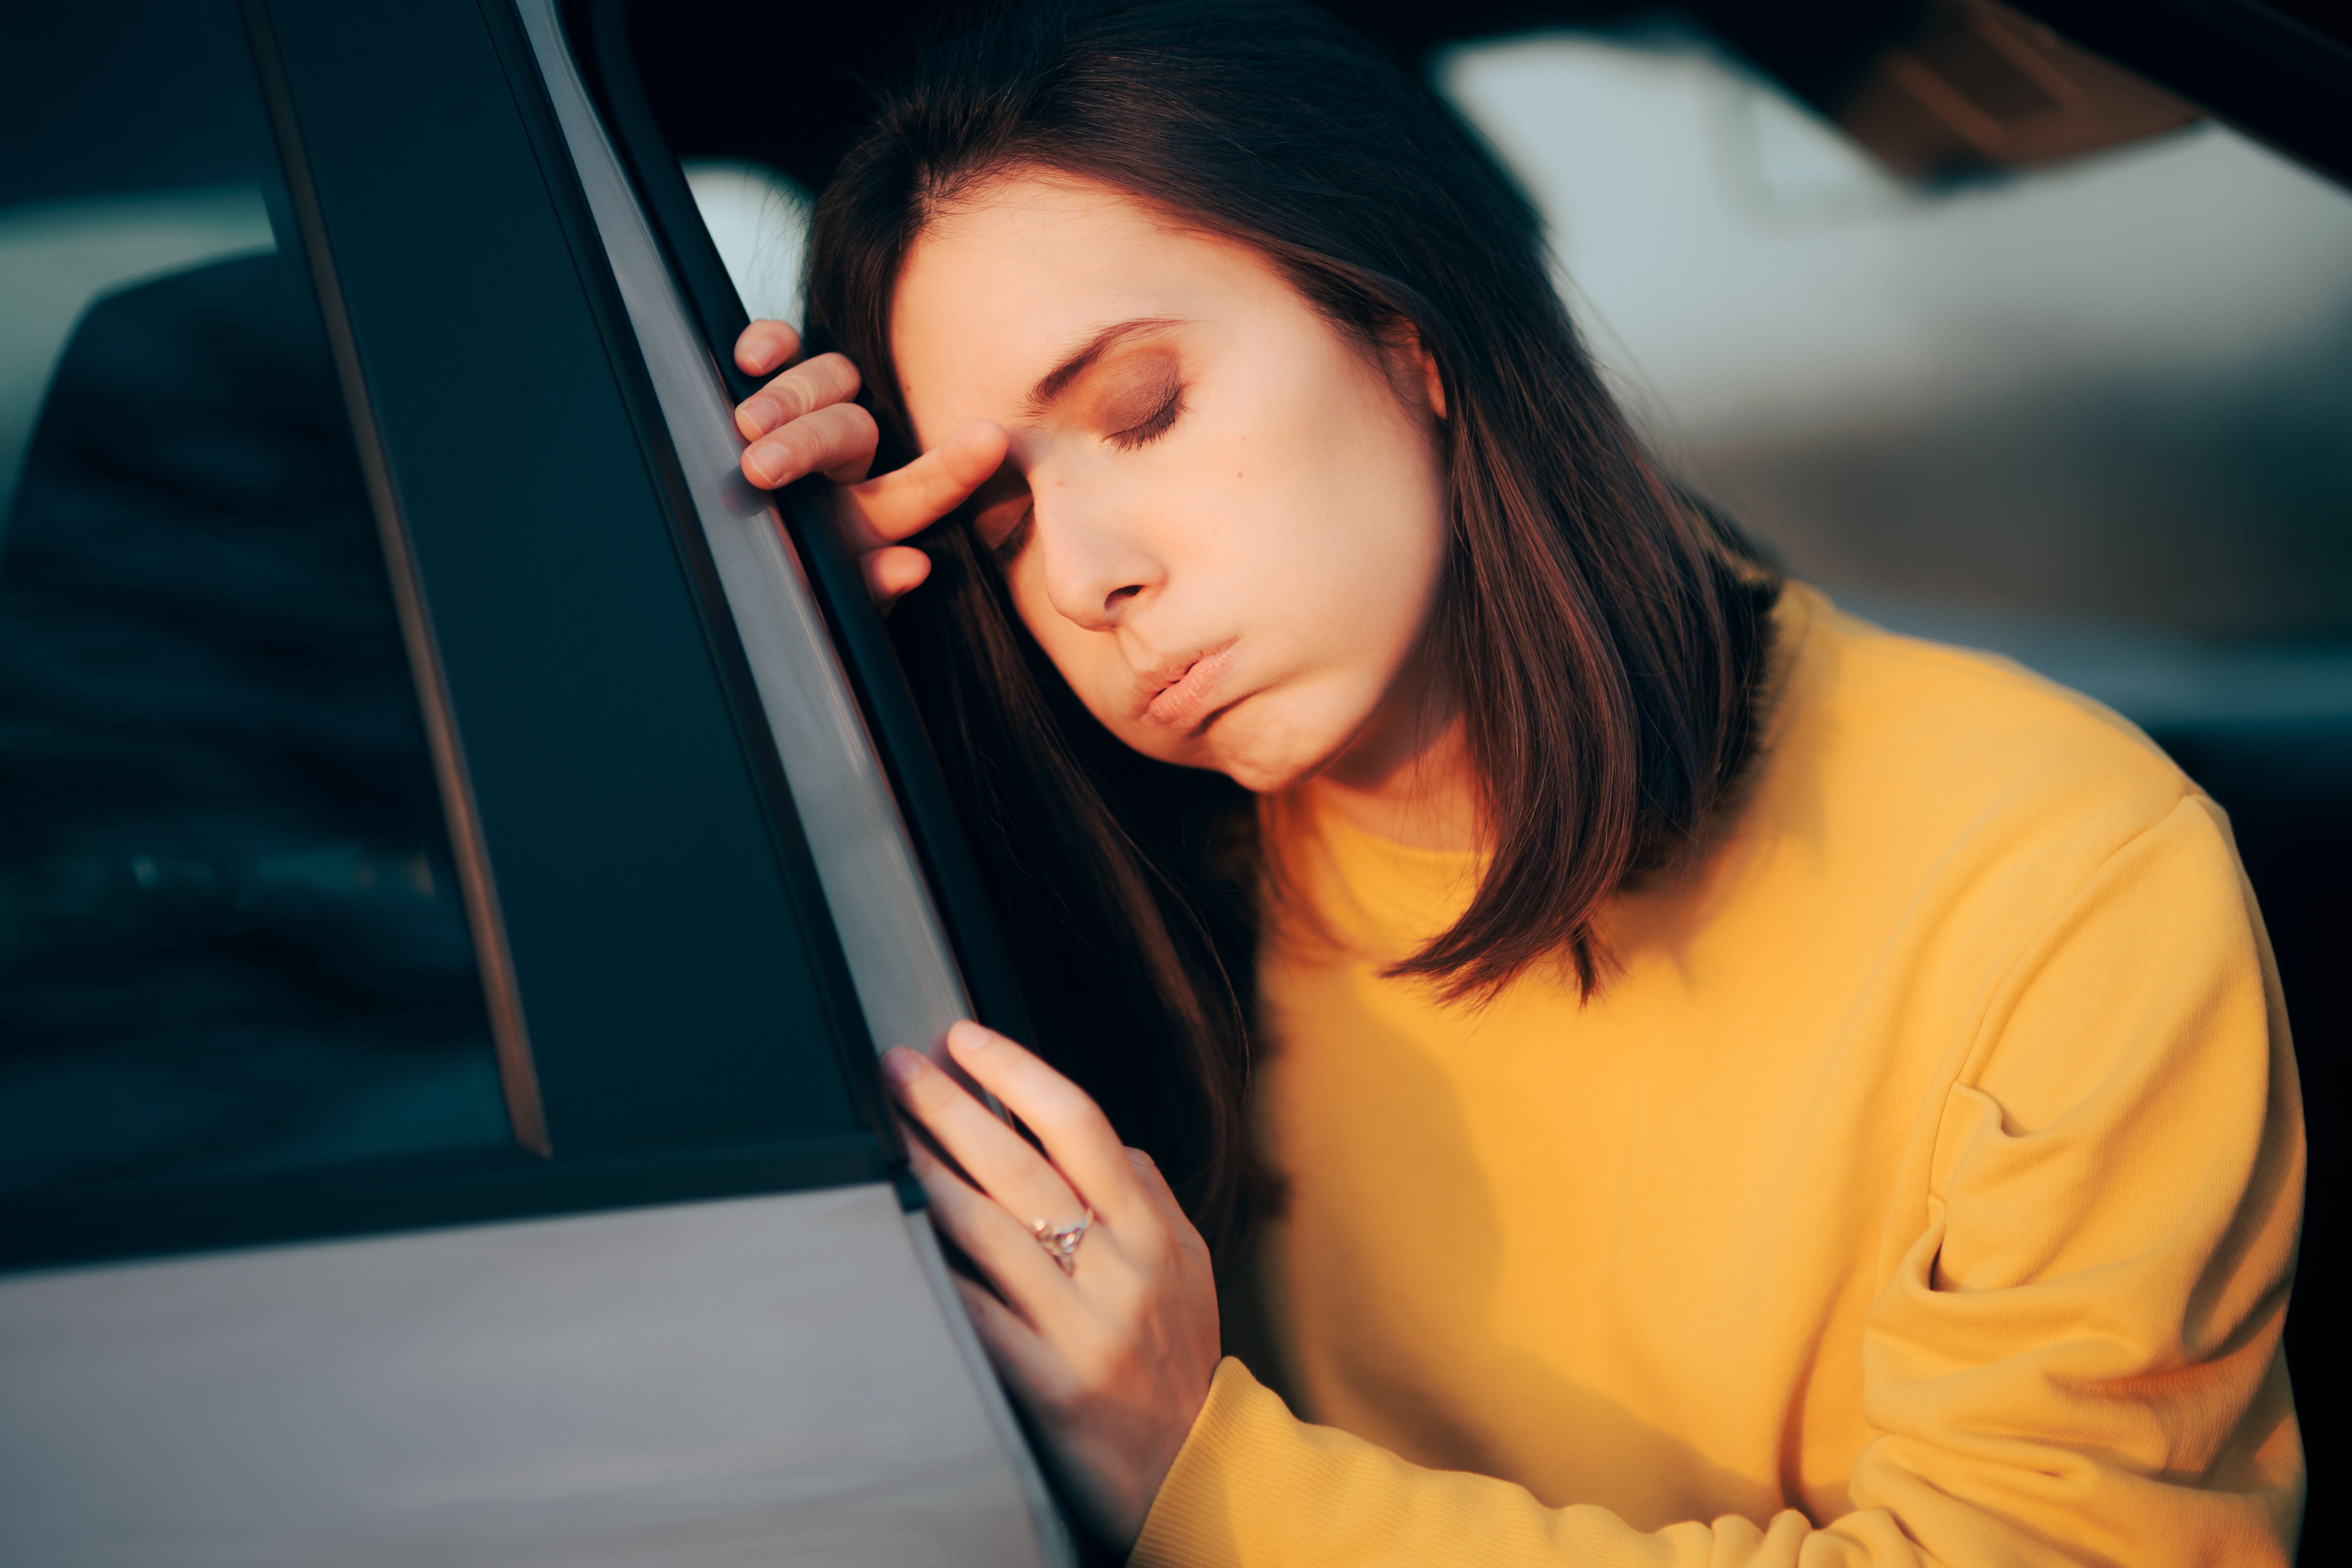 Woman feeling bad | Source: Shutterstock